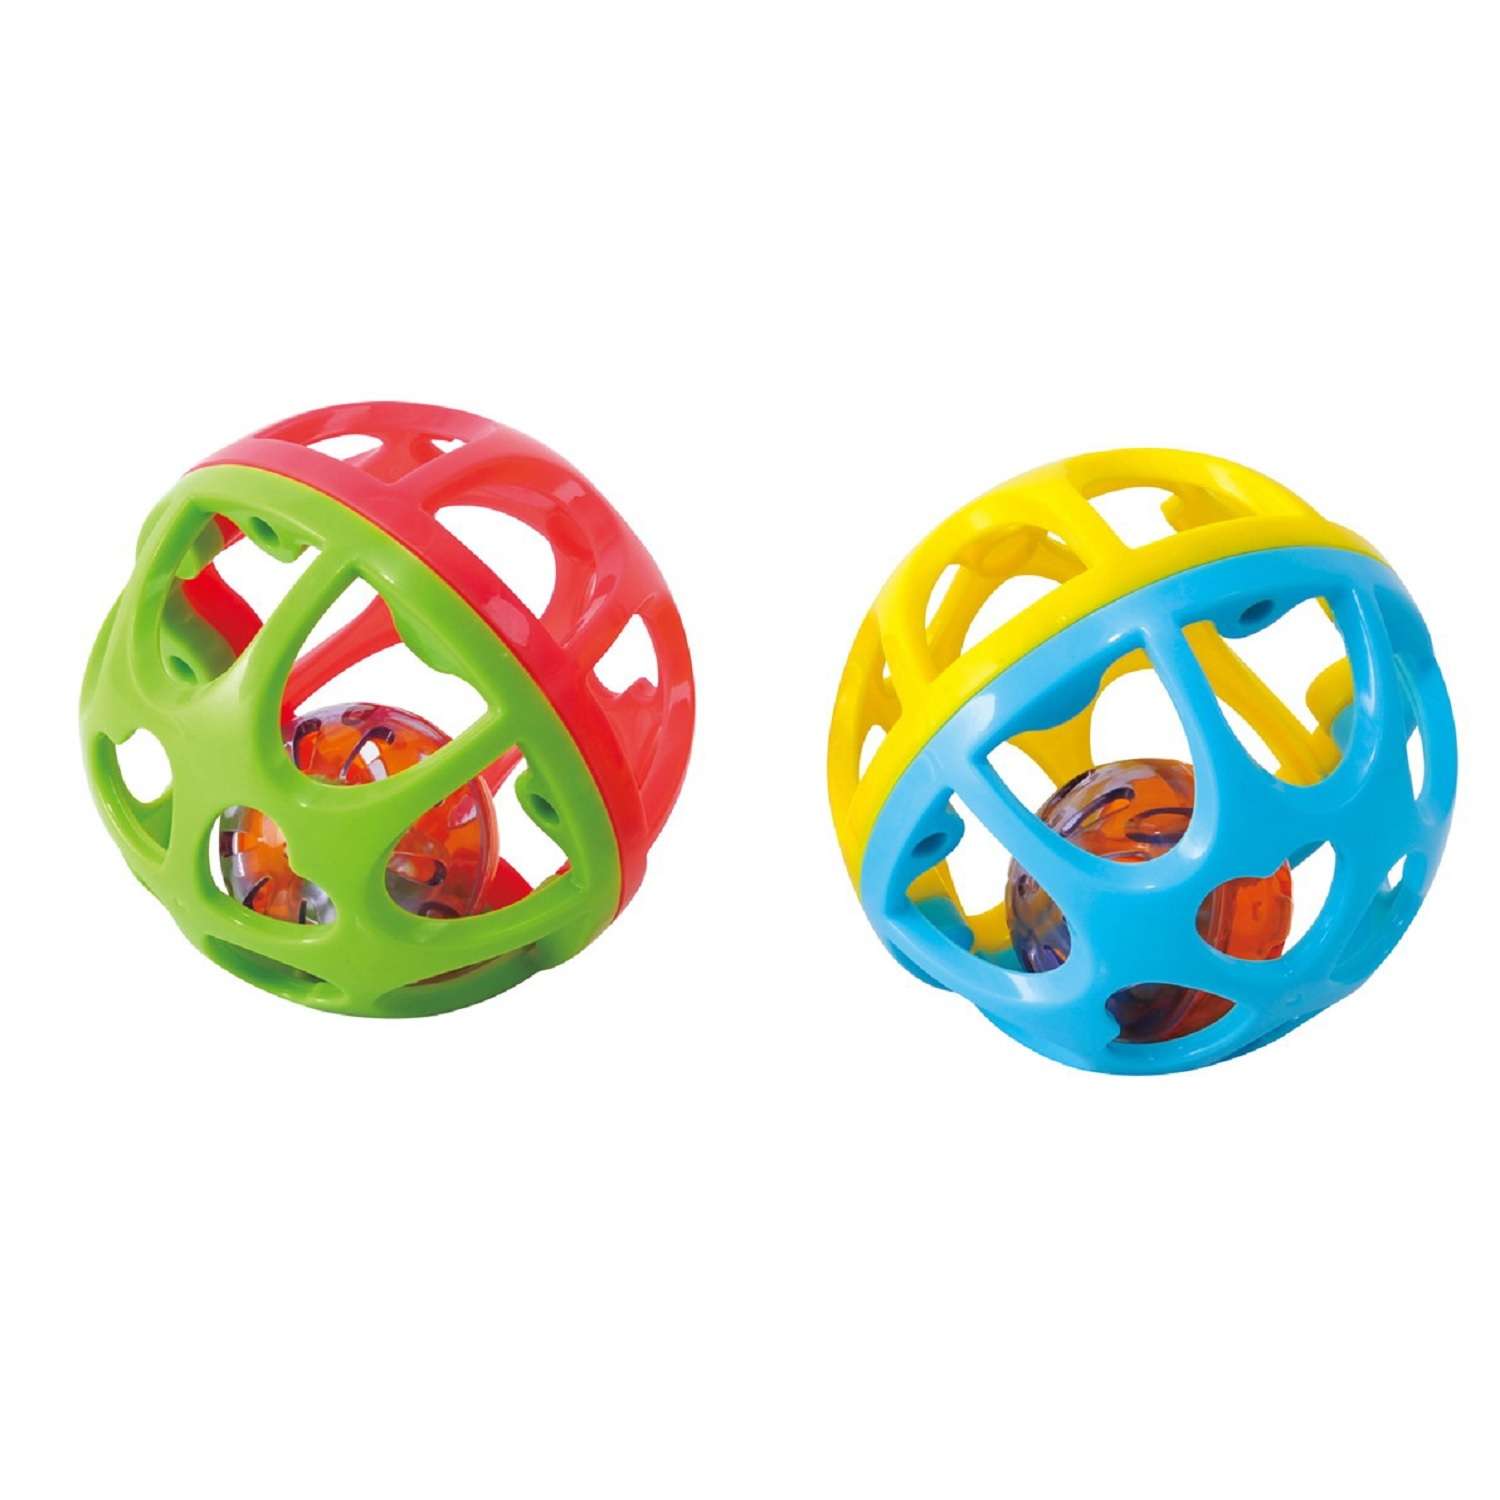 Развивающая игрушка Playgo Мяч-погремушка в ассортименте - фото 1